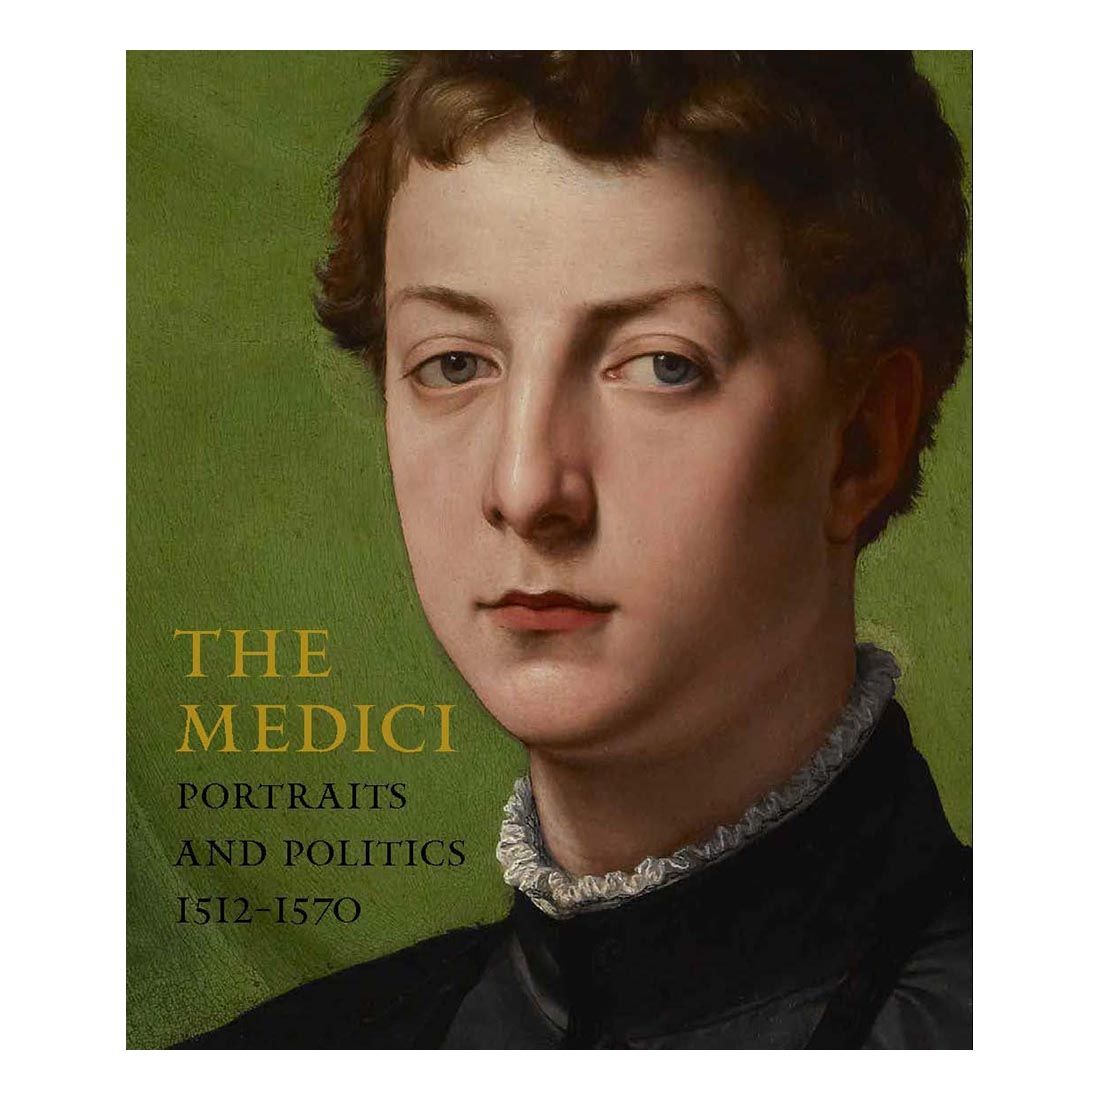 The Medici: Portraits and Politics, 1512-1570